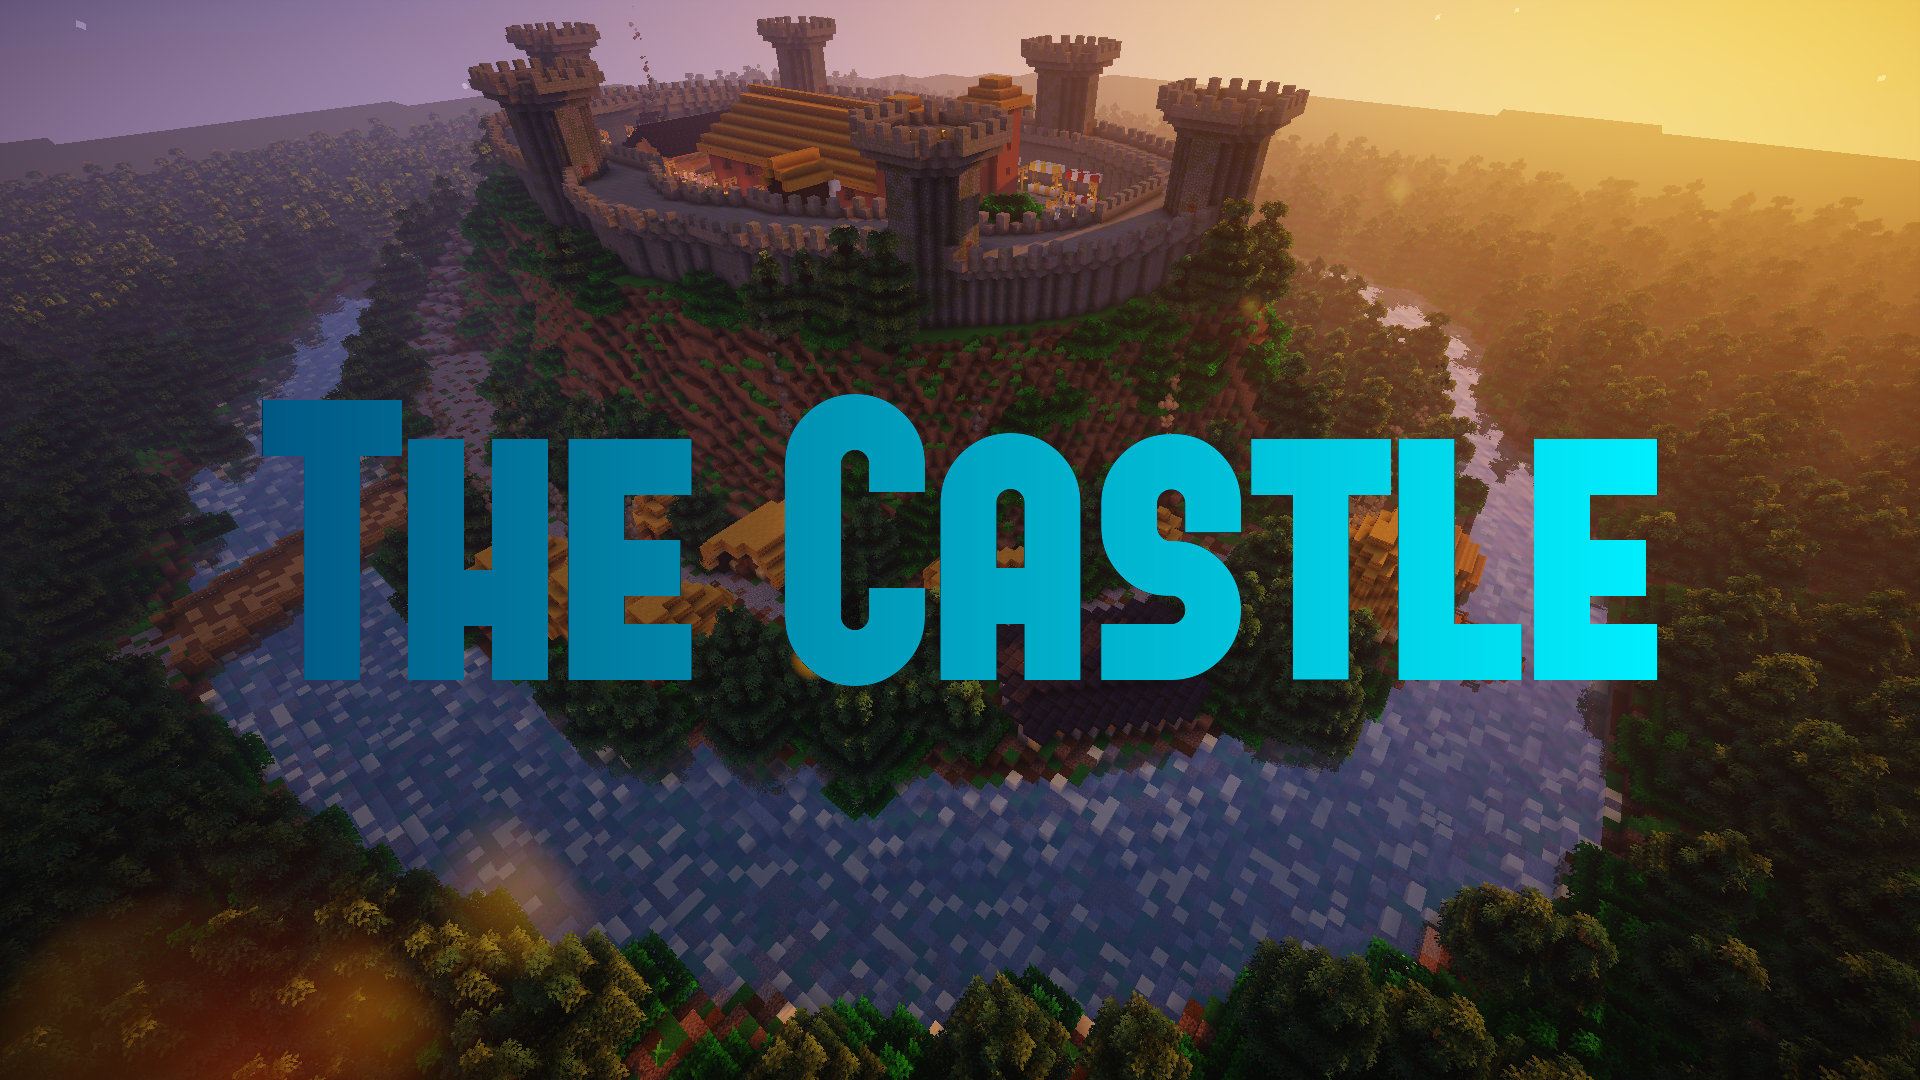 Baixar The Castle para Minecraft 1.16.4